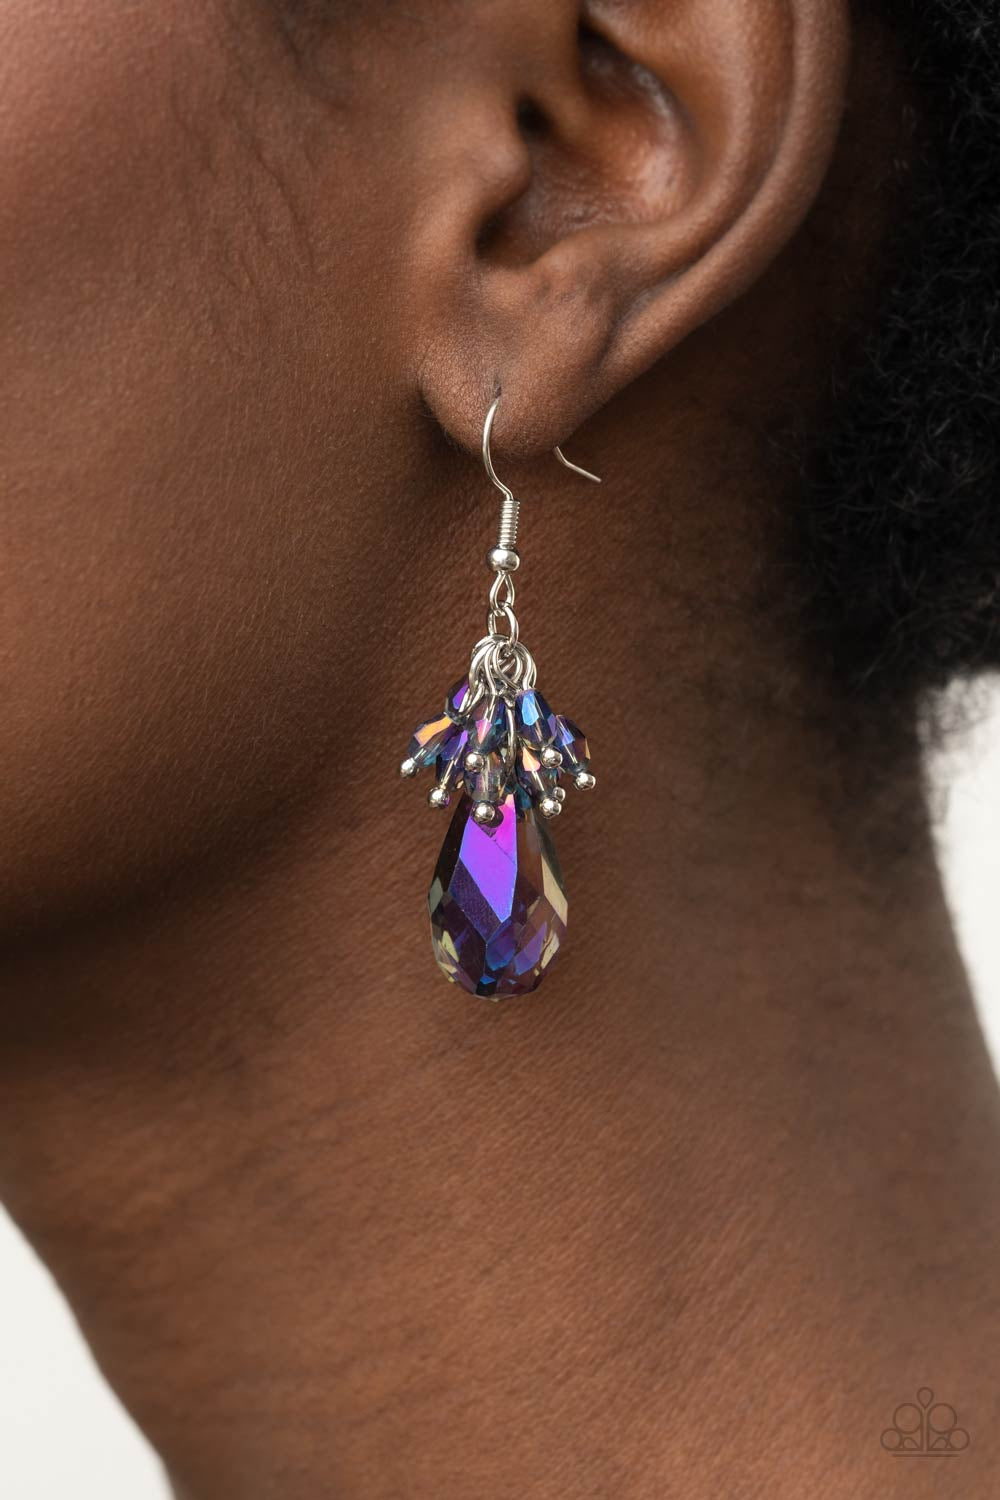 Paparazzi Jewelry Earrings Well Versed in Sparkle - Purple